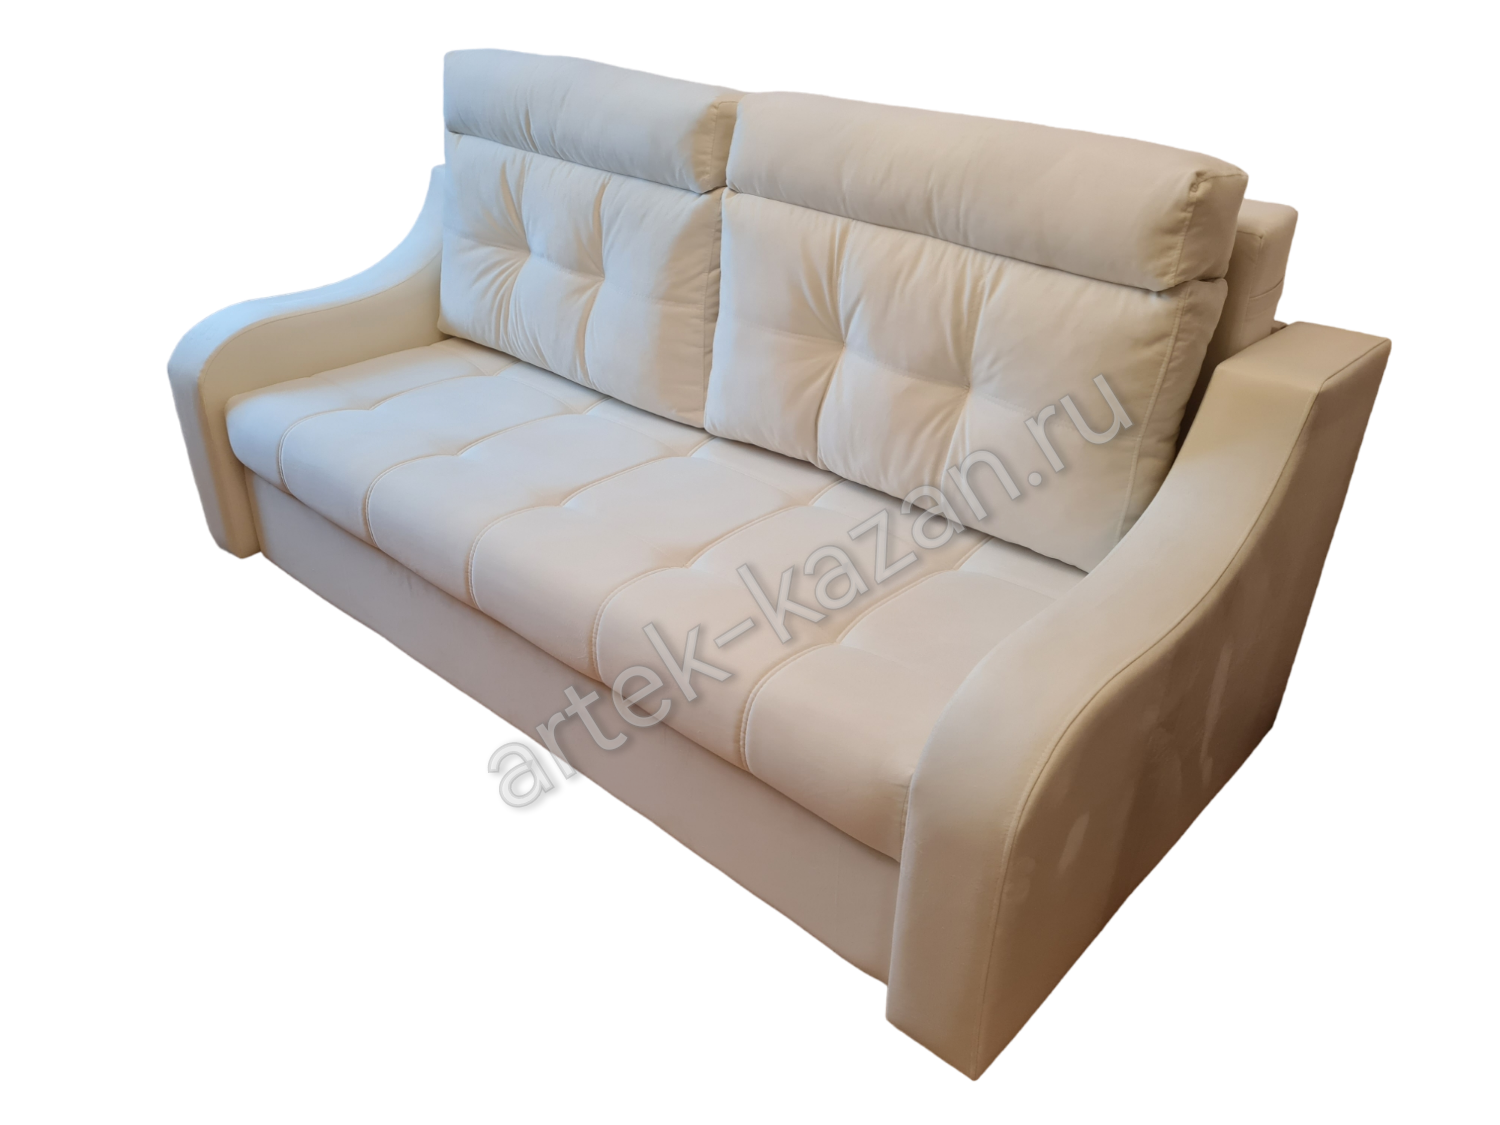 Мини диван на выкатном механизме Миник фото № 42. Купить недорогой диван по низкой цене от производителя можно у нас.